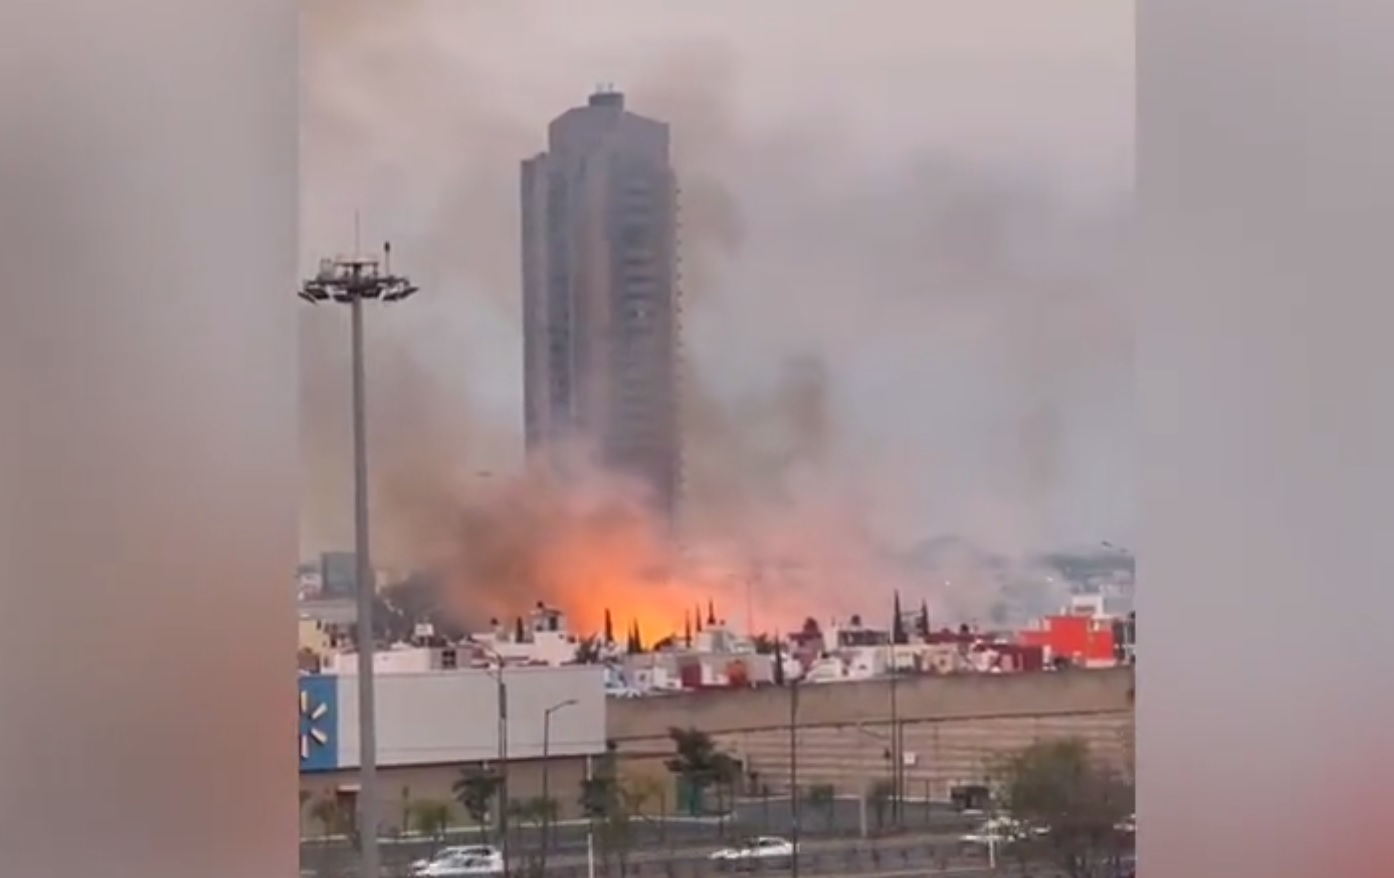 VIDEO Incendio en pastizales provoca pánico en inmediaciones de Ciudad Judicial